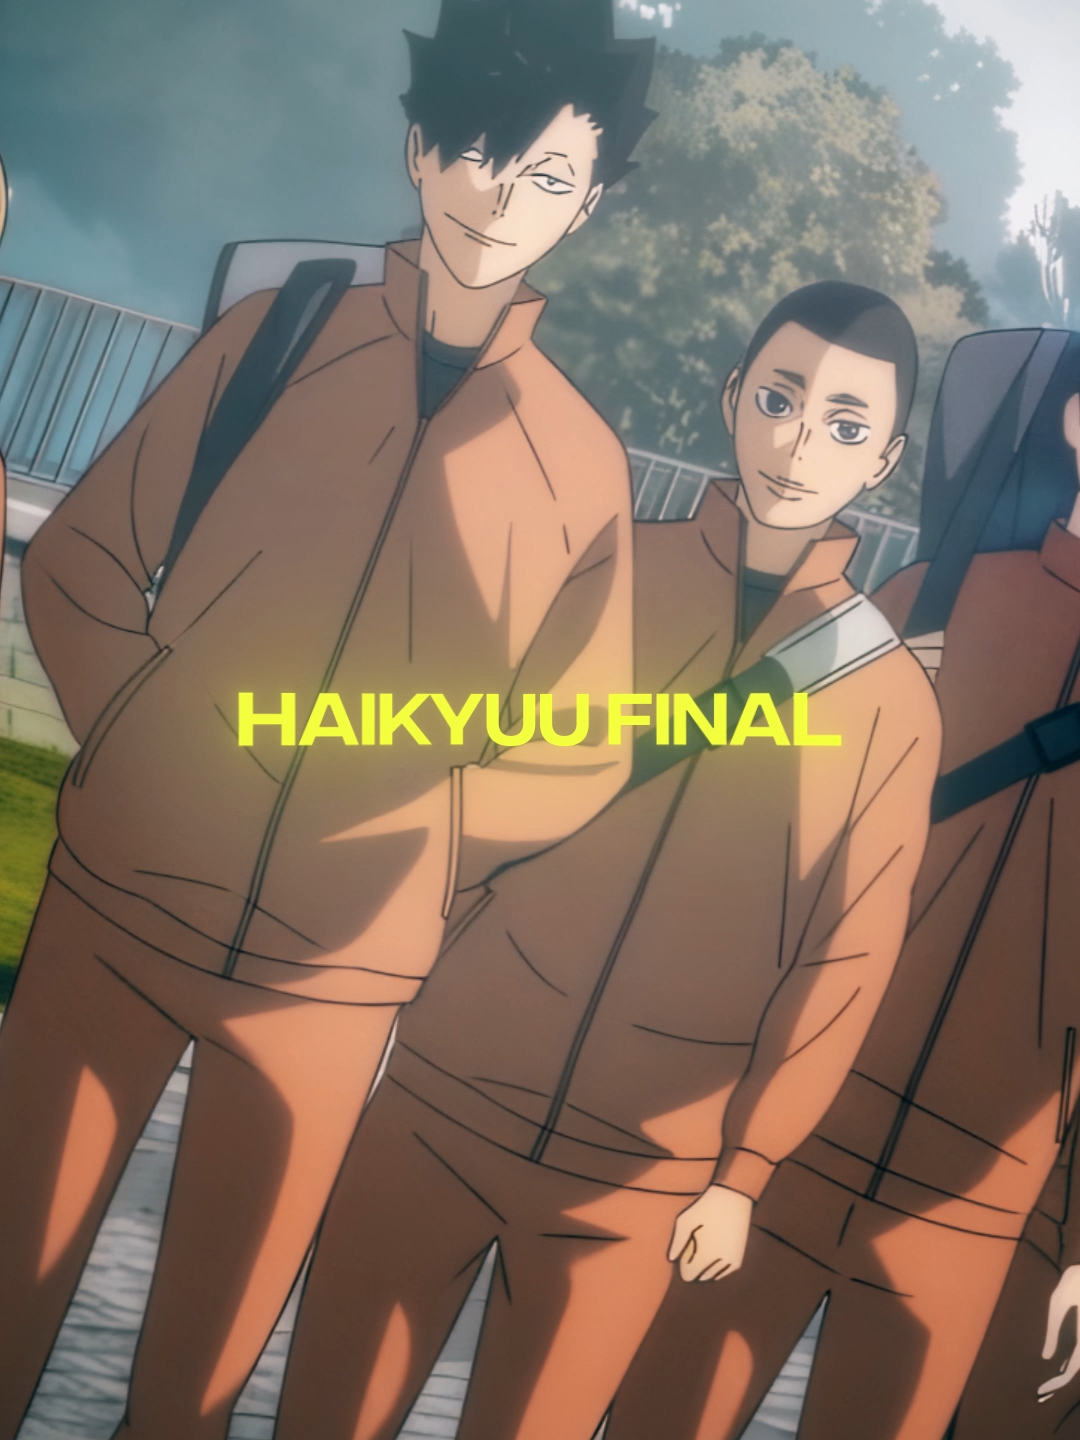 #haikyuu #anime